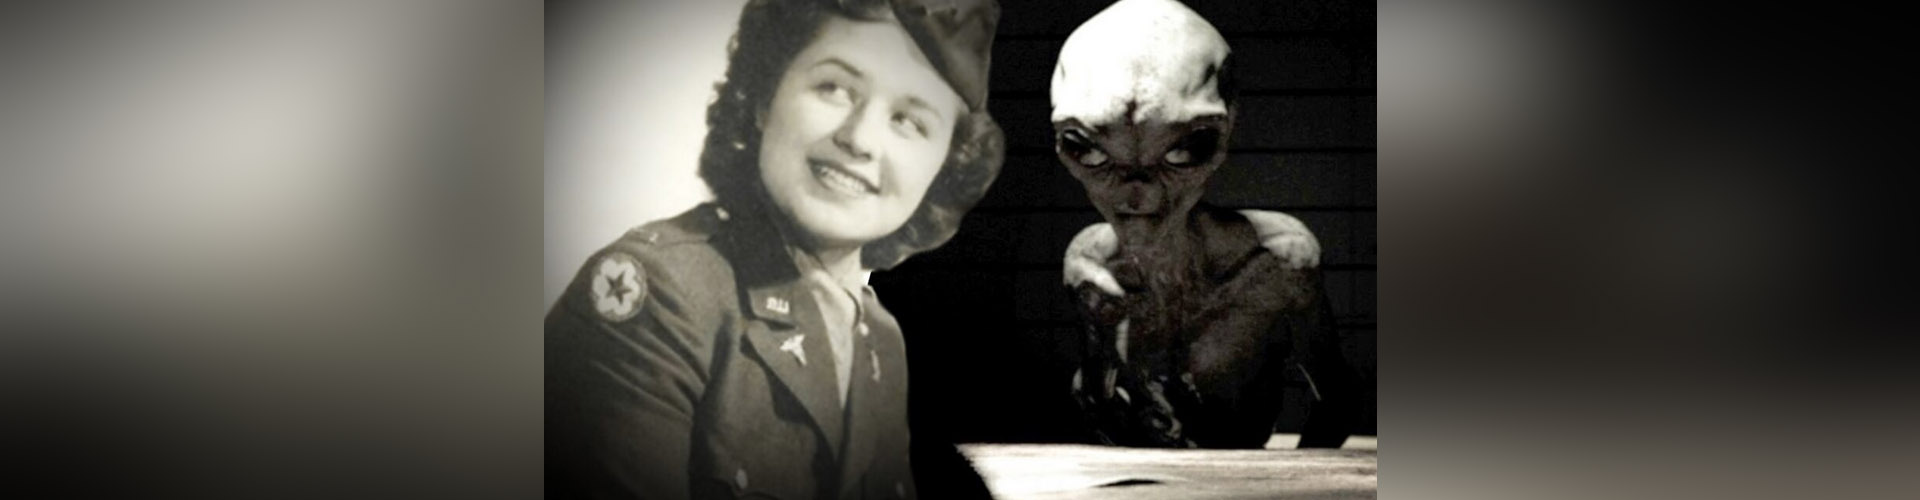 (VIDEO) Airl, el extraterrestre que conversó con una enfermera de la USAF